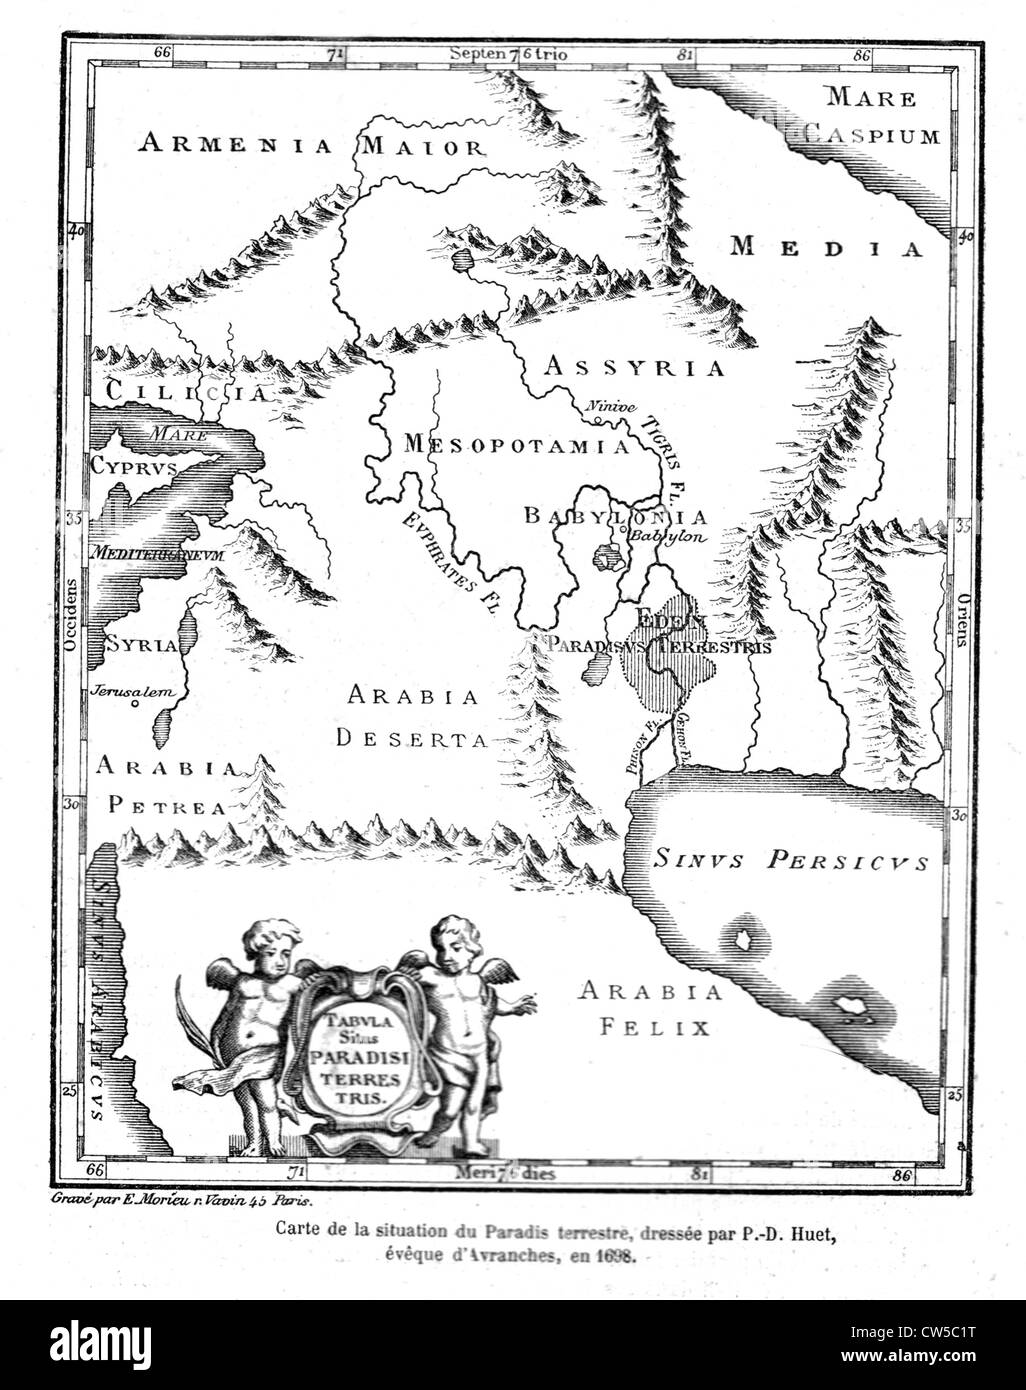 Huet, mapa geográfico del paraíso terrenal, 1698 Foto de stock